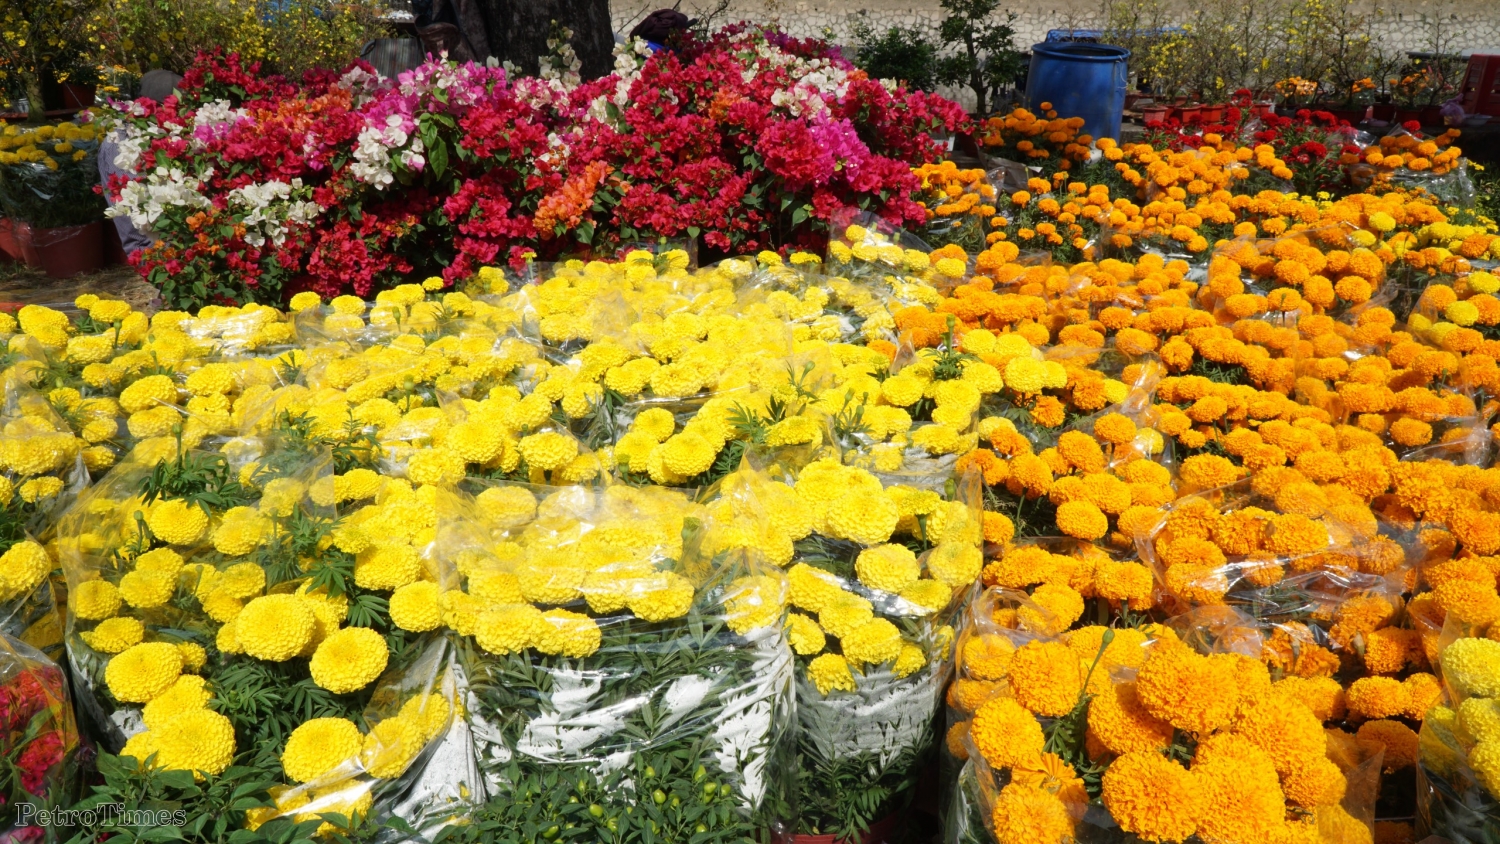 Ngắm chợ hoa “Trên bến dưới thuyền” giữa Sài Gòn